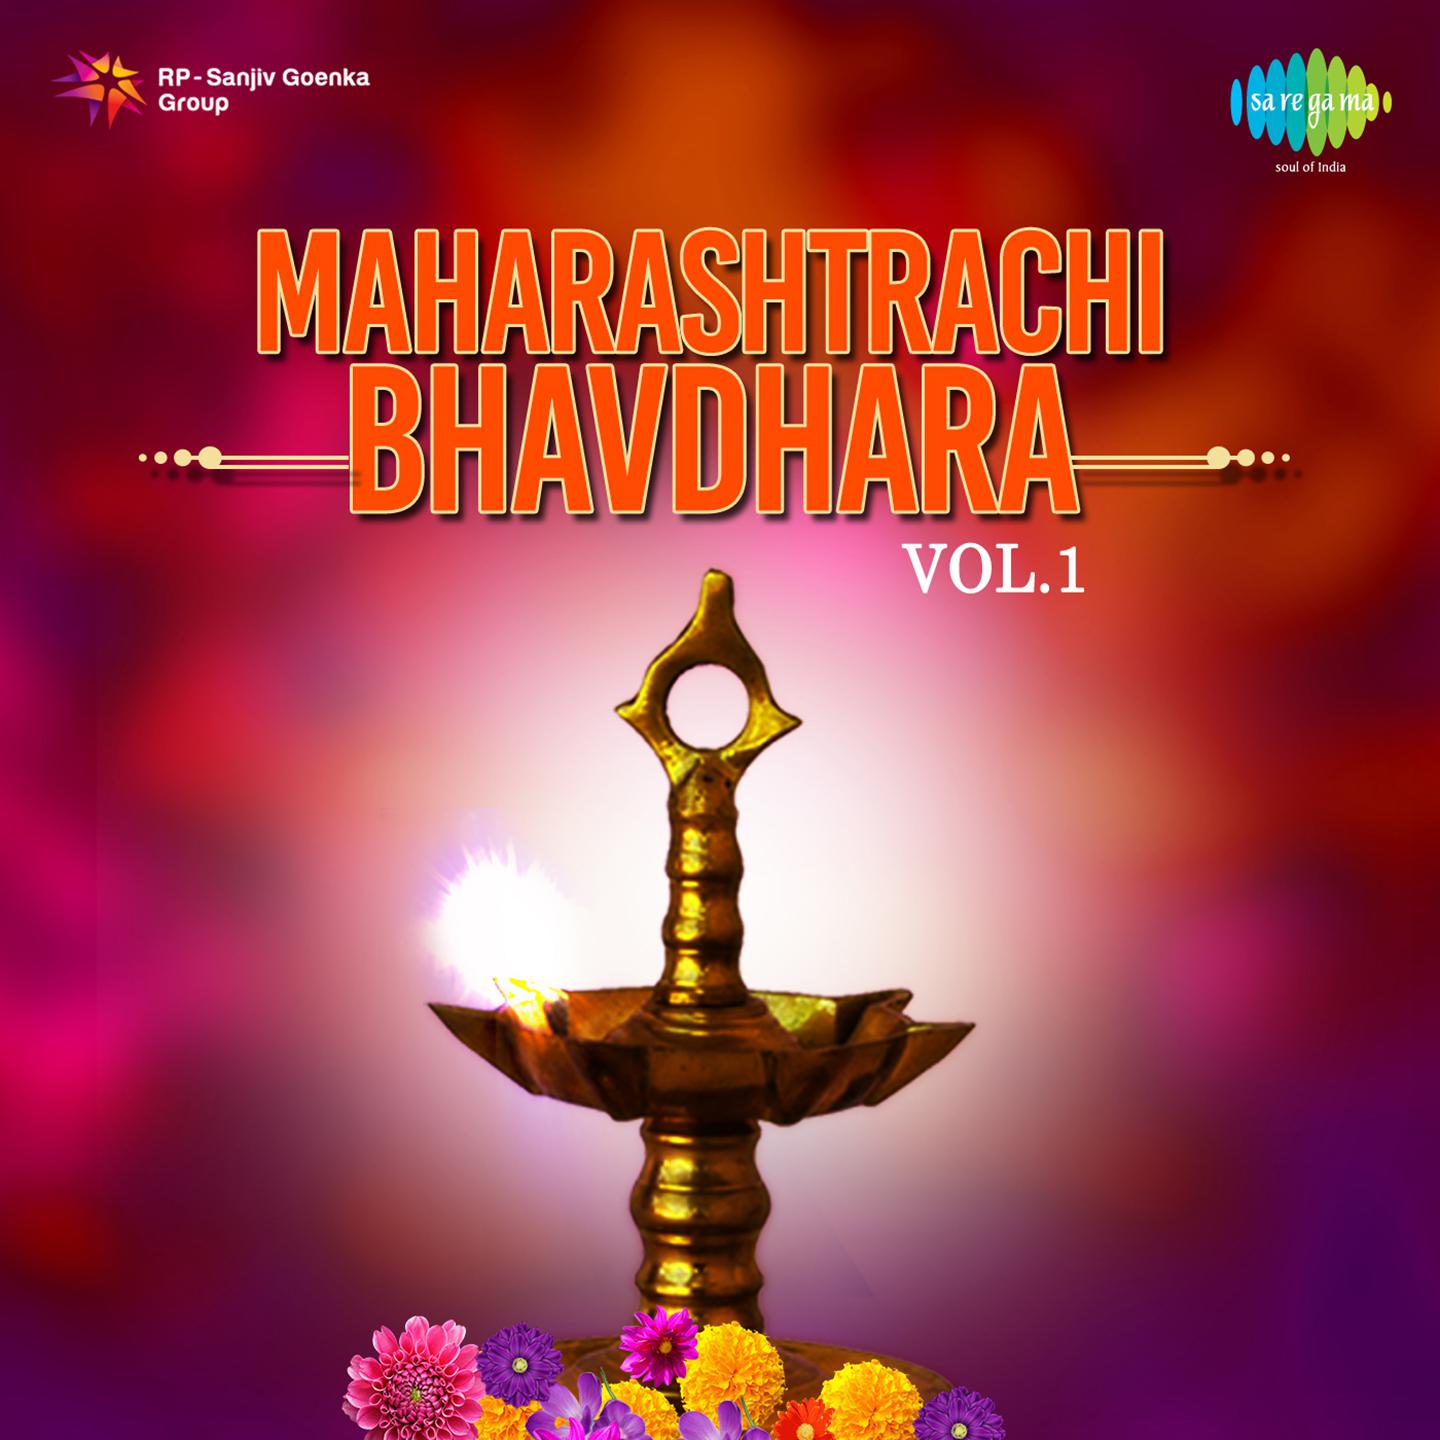 Maharashtrachi Bhavdhara Vol 1